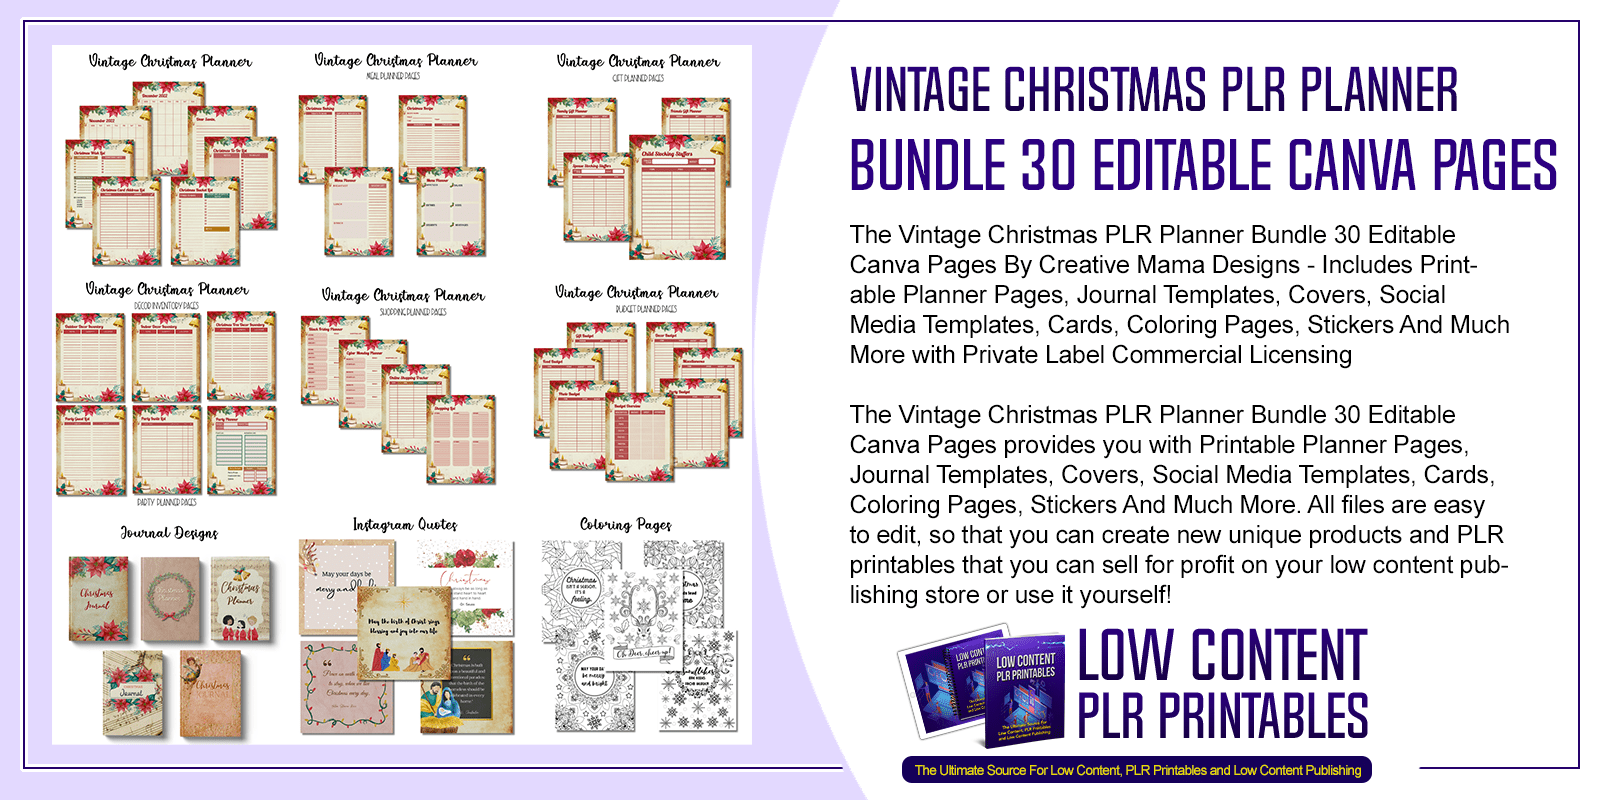 Vintage Christmas PLR Planner Bundle 30 Editable Canva Pages